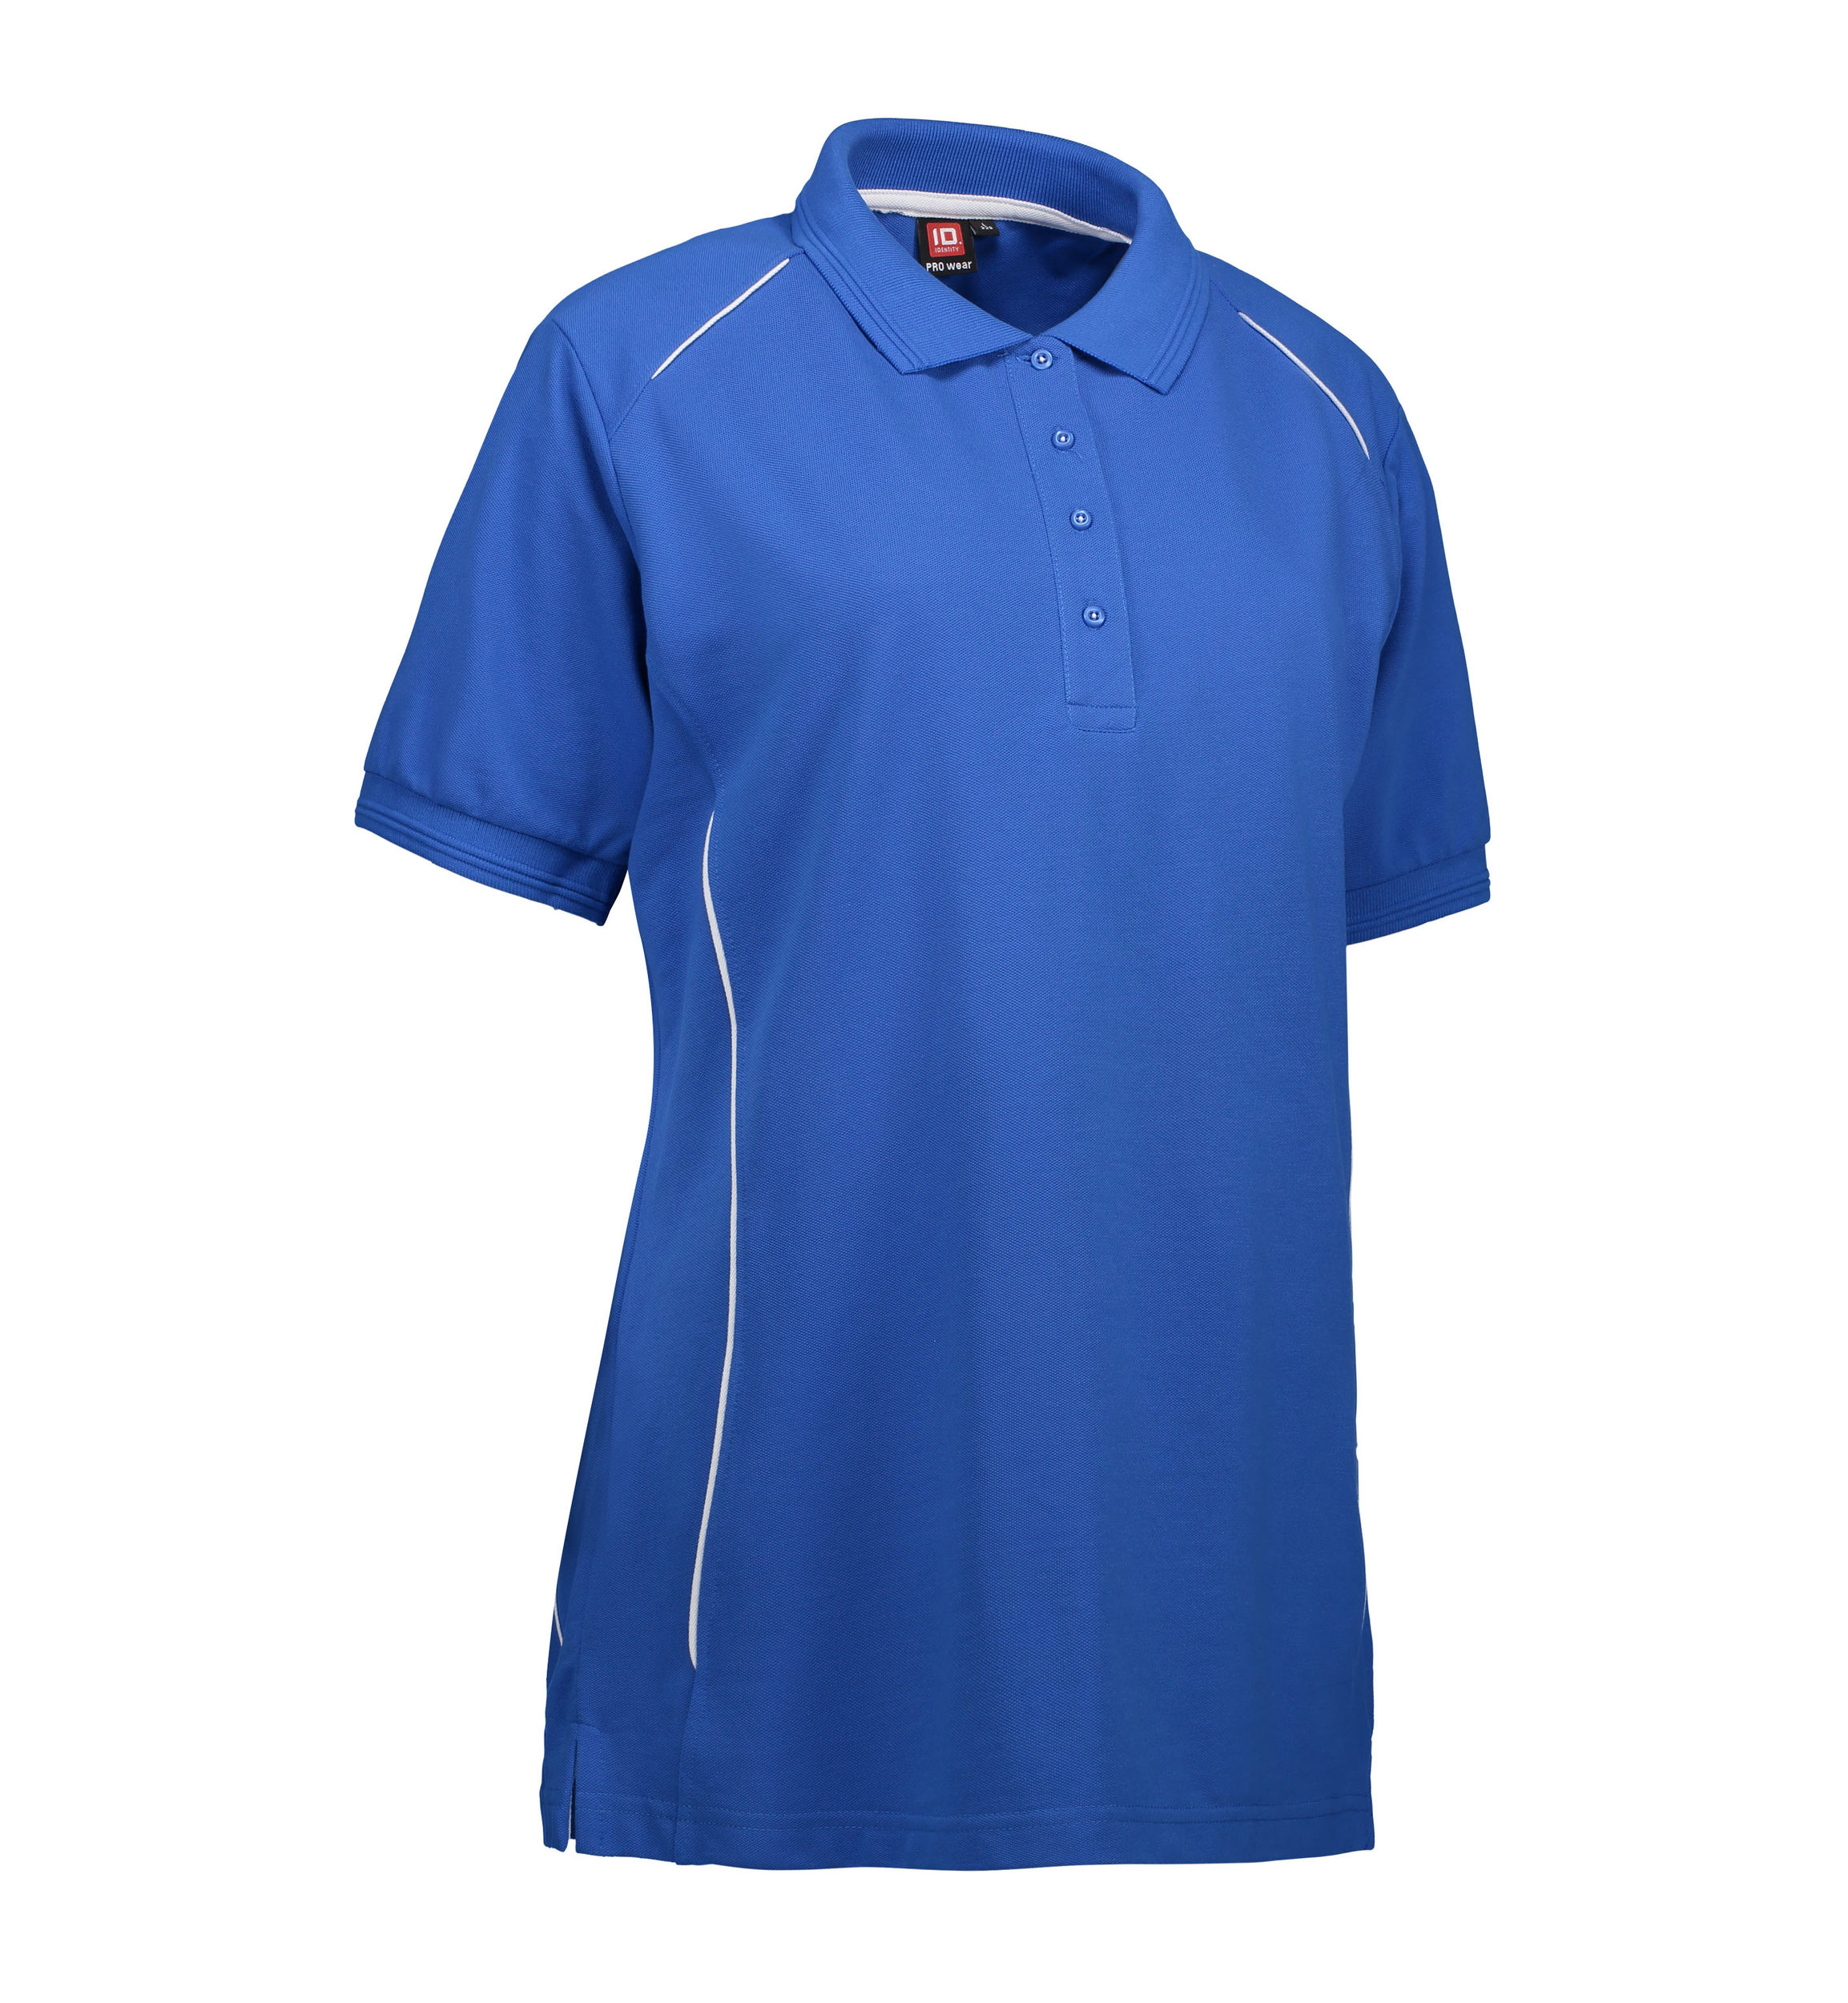 Se Slidstærk polo t-shirt i blå til damer - 3XL hos Sygeplejebutikken.dk